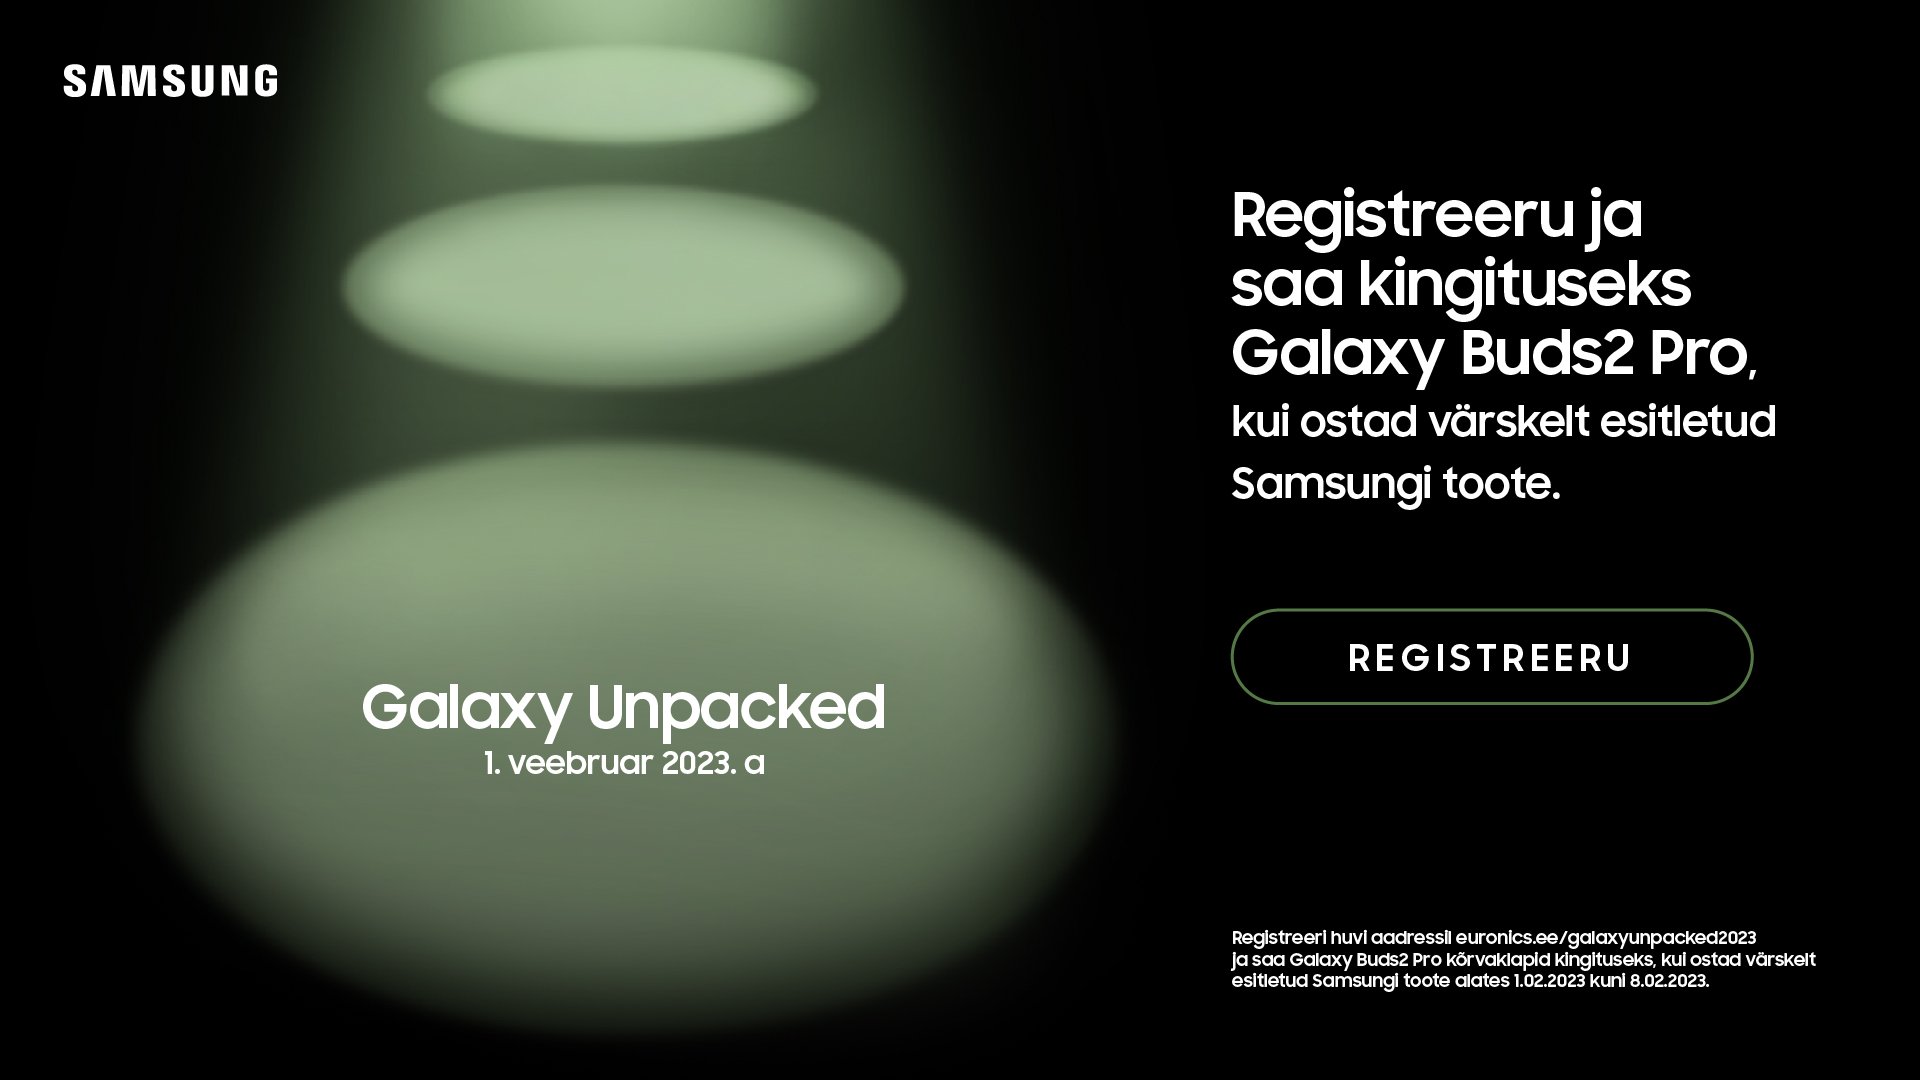 La oferta de Samsung Galaxy S23 Unpacked 2023 es Galaxy Buds 2 Pro